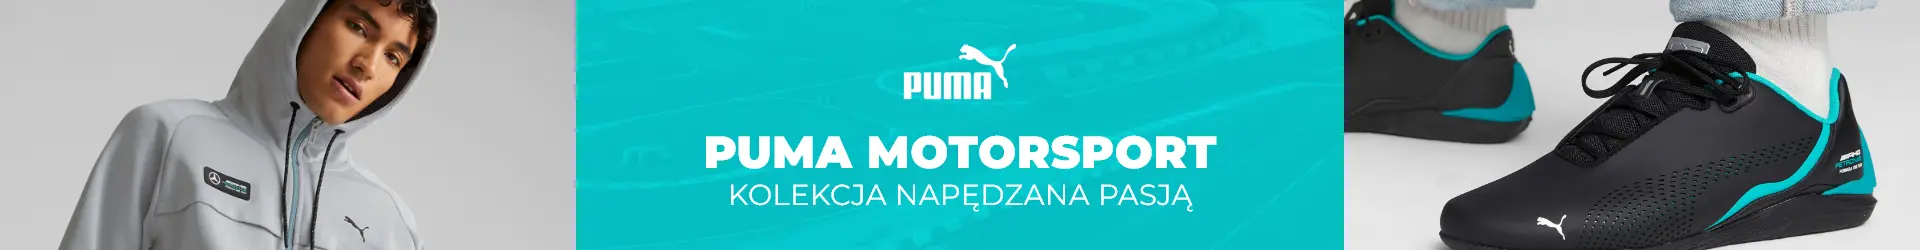 Puma x Motorsport - wyjątkowa kolekcja dla pasjonatów szybkiego stylu życia